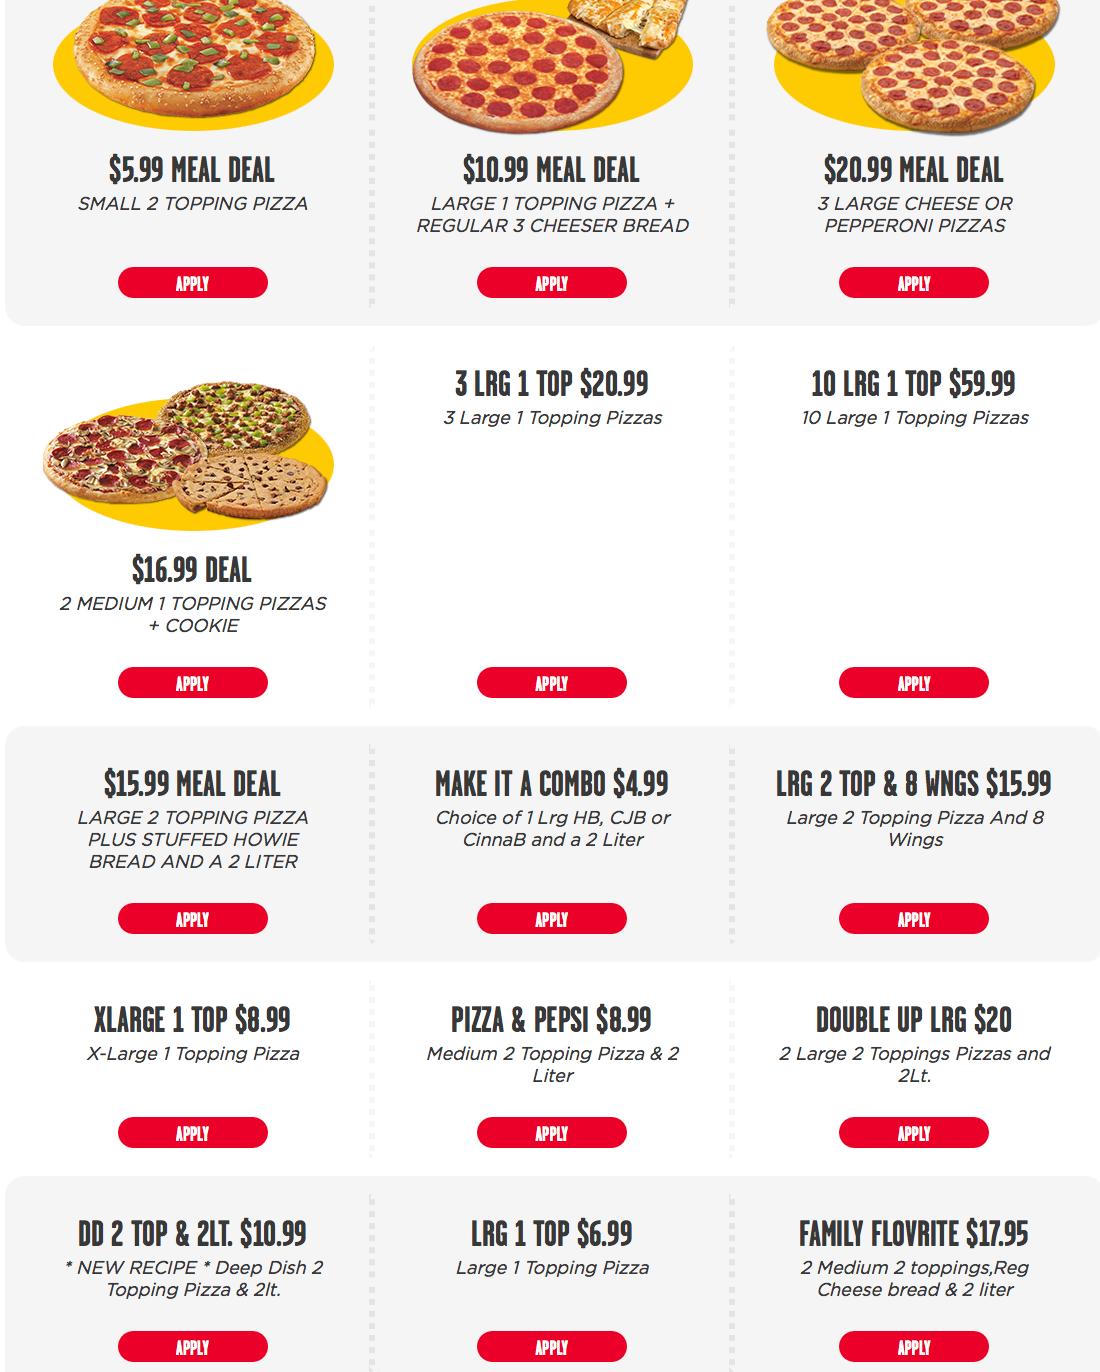 calories in medium papa john's pizza - How many calories are in a 14 inch Papa John's pizza